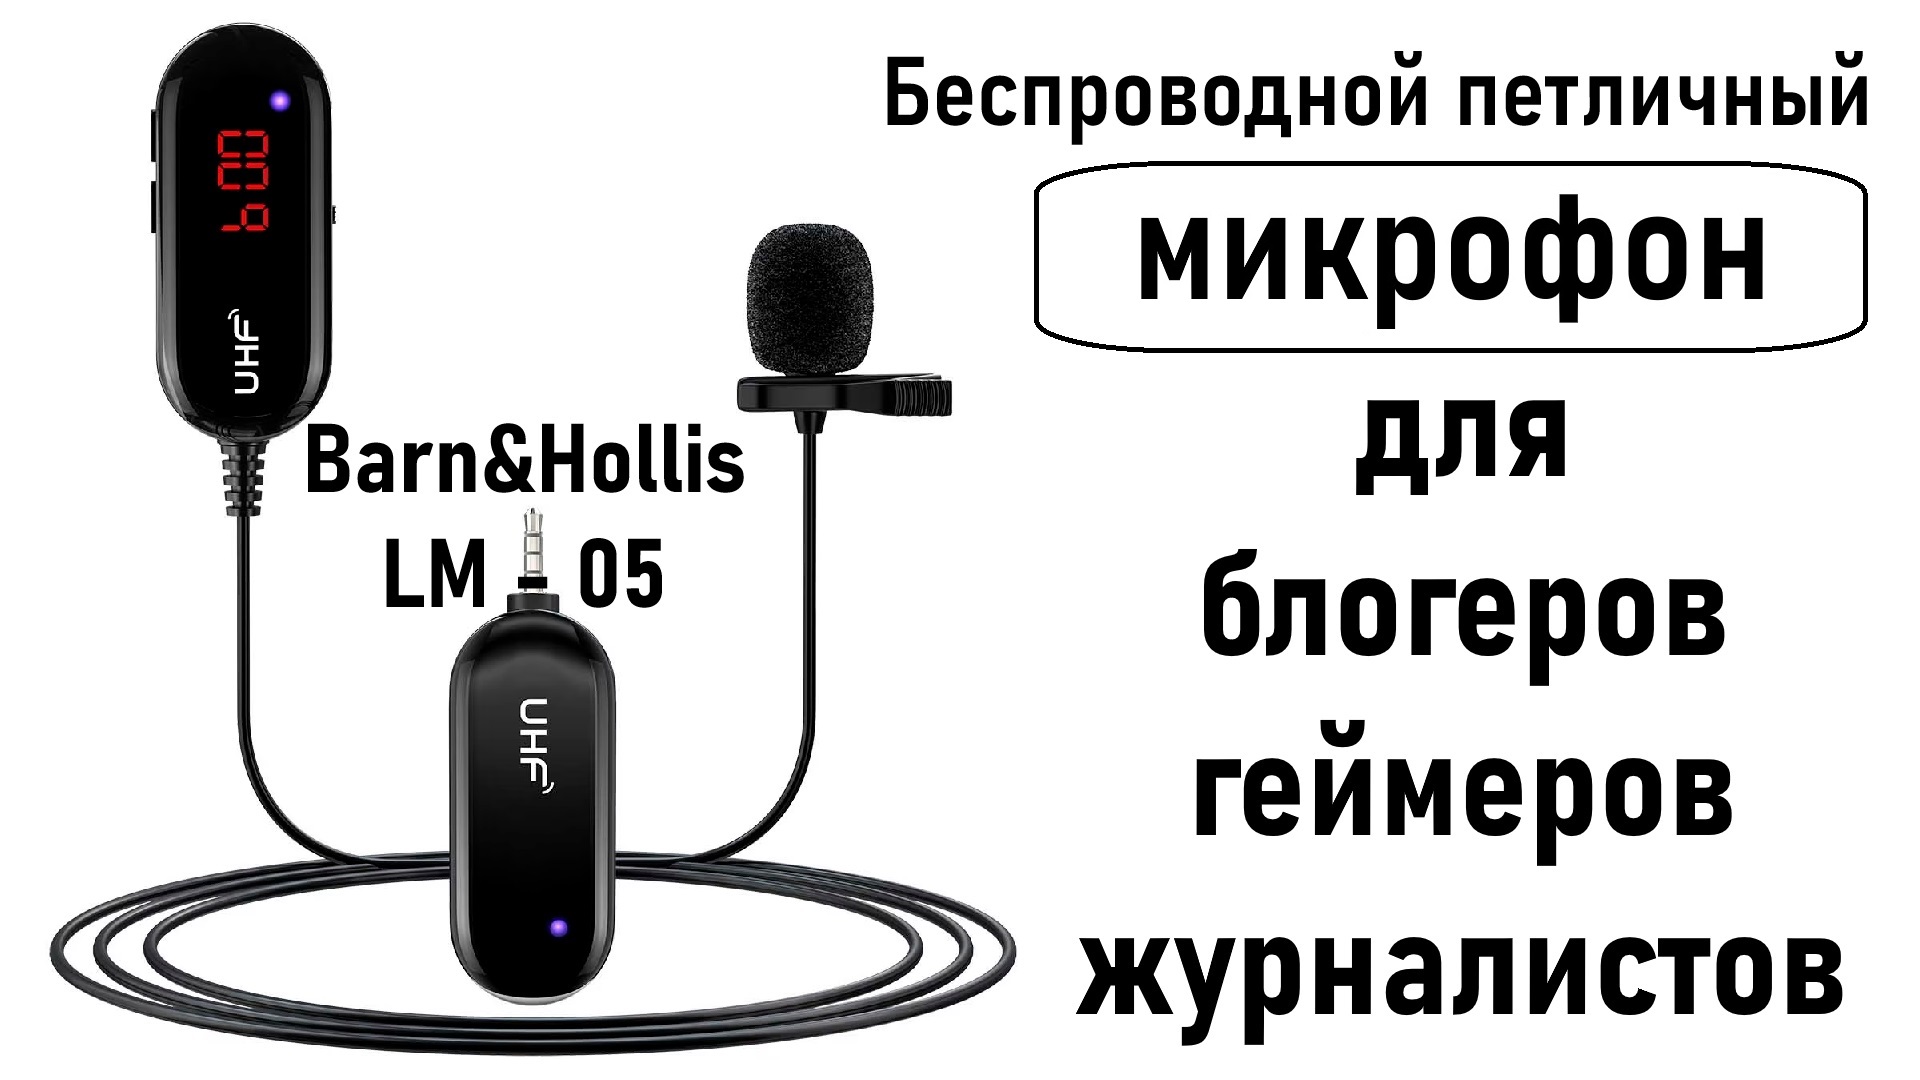 Микрофон Band&Hollis LM-05 - Беспроводной Петличный! Микрофон для блогеров, геймеров и журналистов!